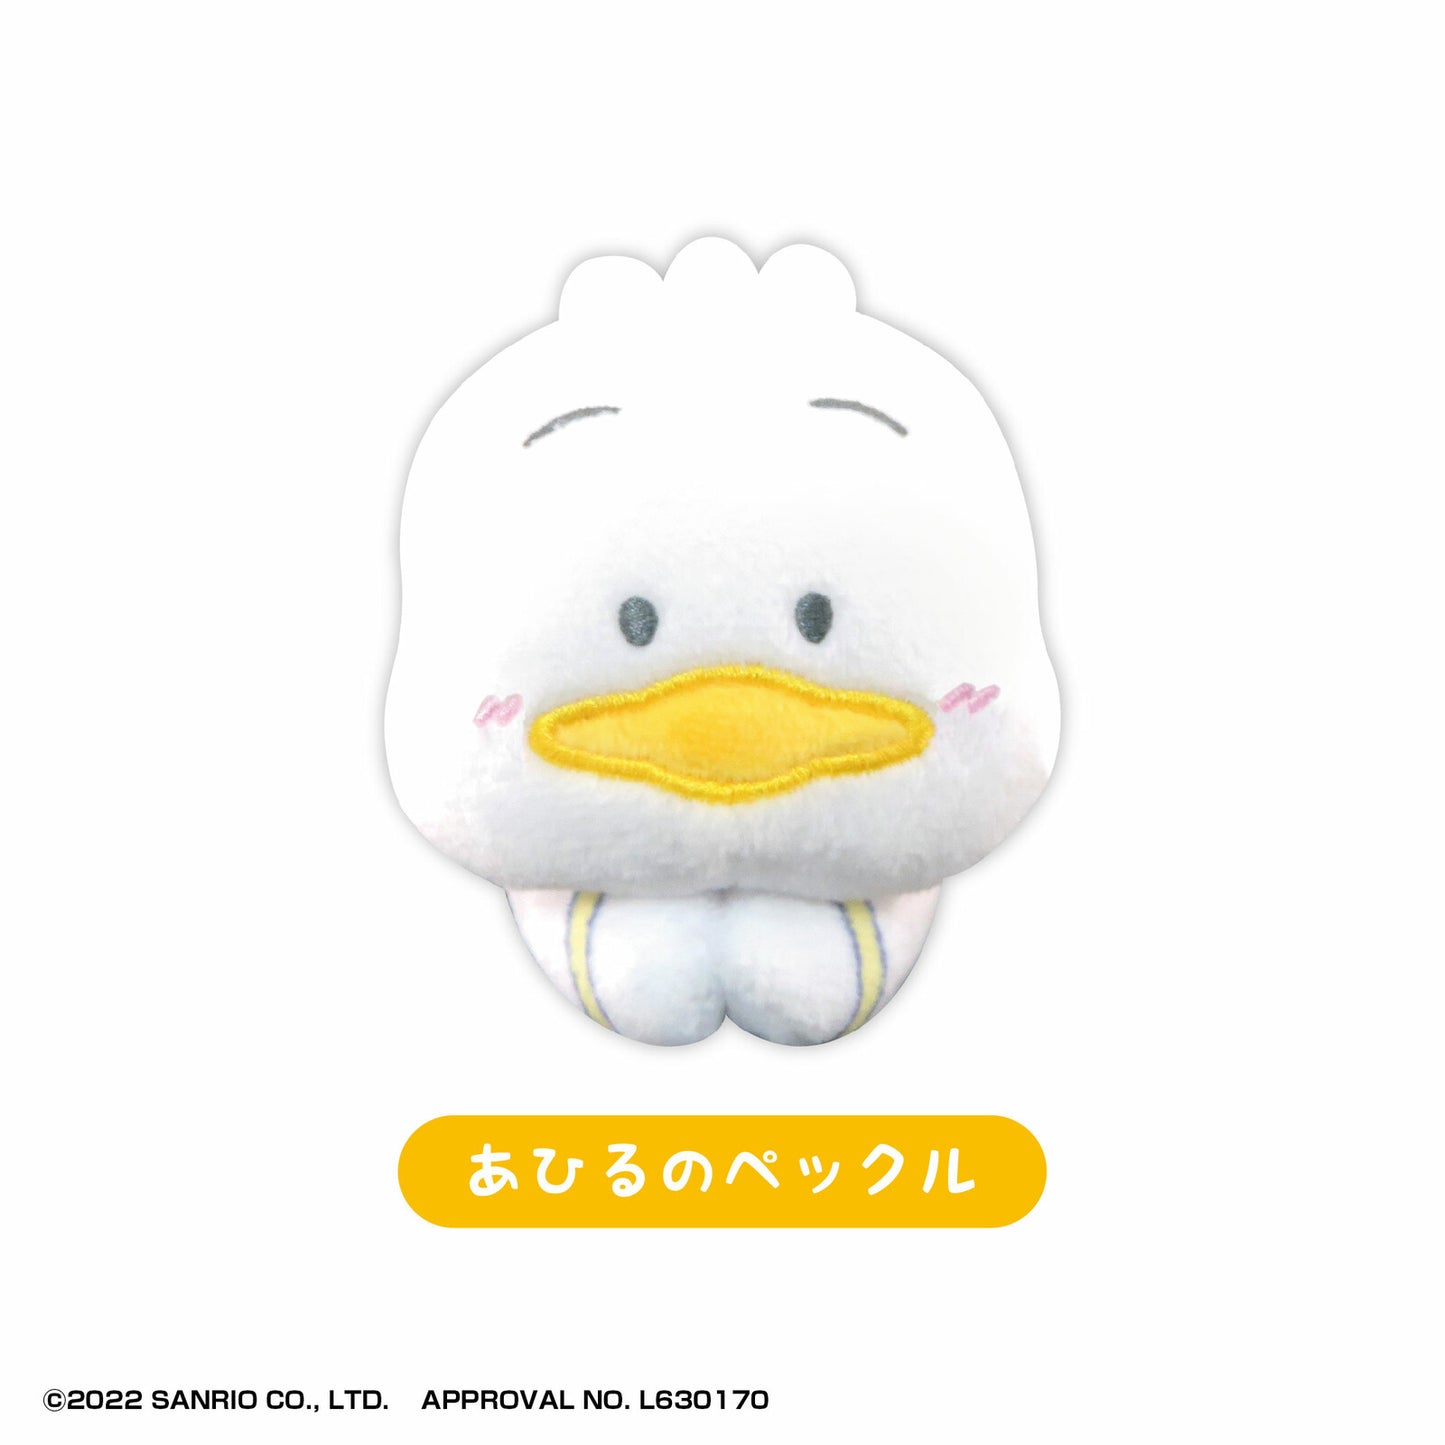 Sanrio Hug Character Collection 2 